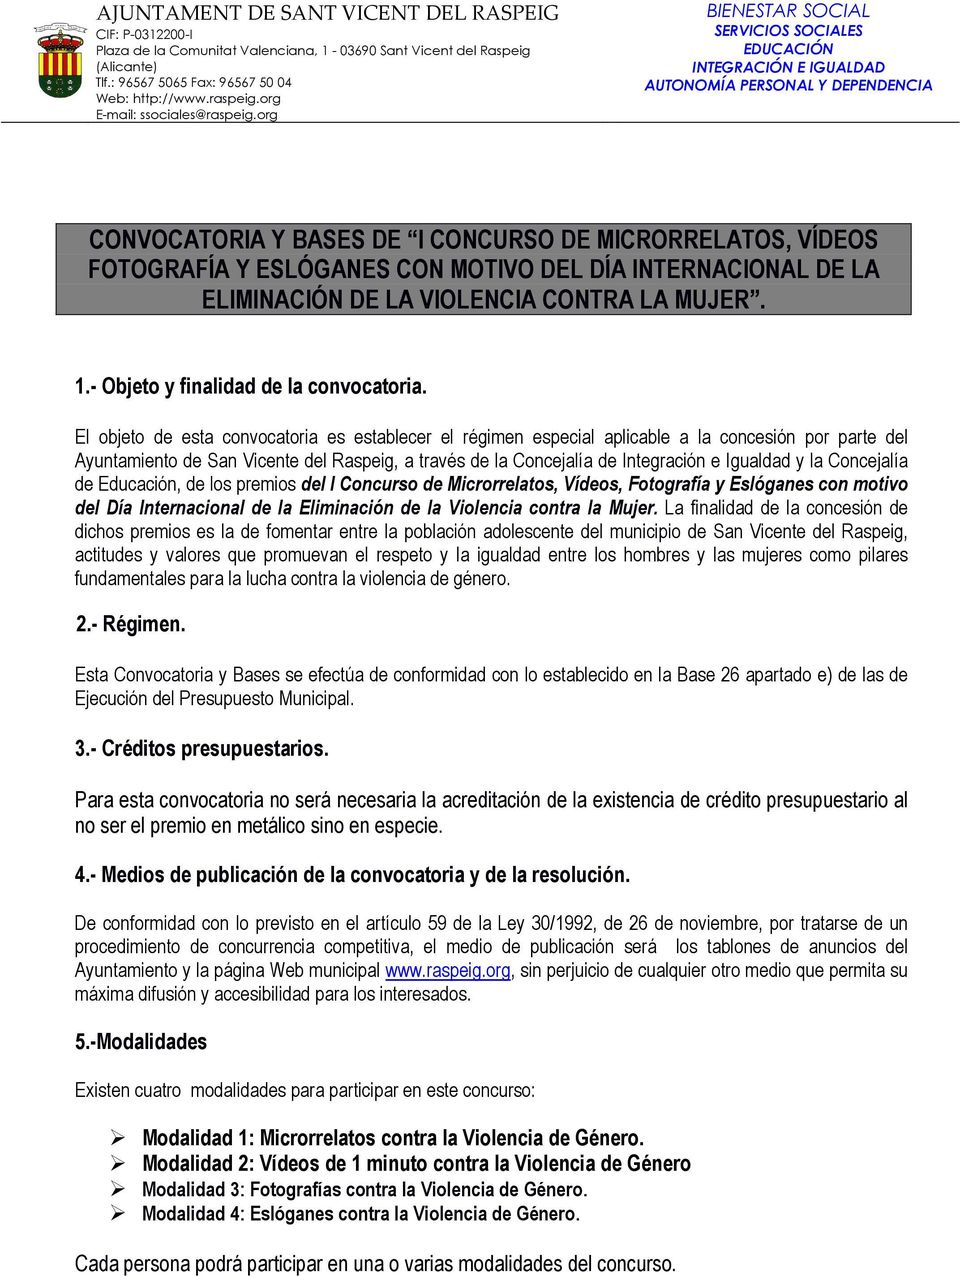 El objeto de esta convocatoria es establecer el régimen especial aplicable a la concesión por parte del Ayuntamiento de San Vicente del Raspeig, a través de la Concejalía de Integración e Igualdad y